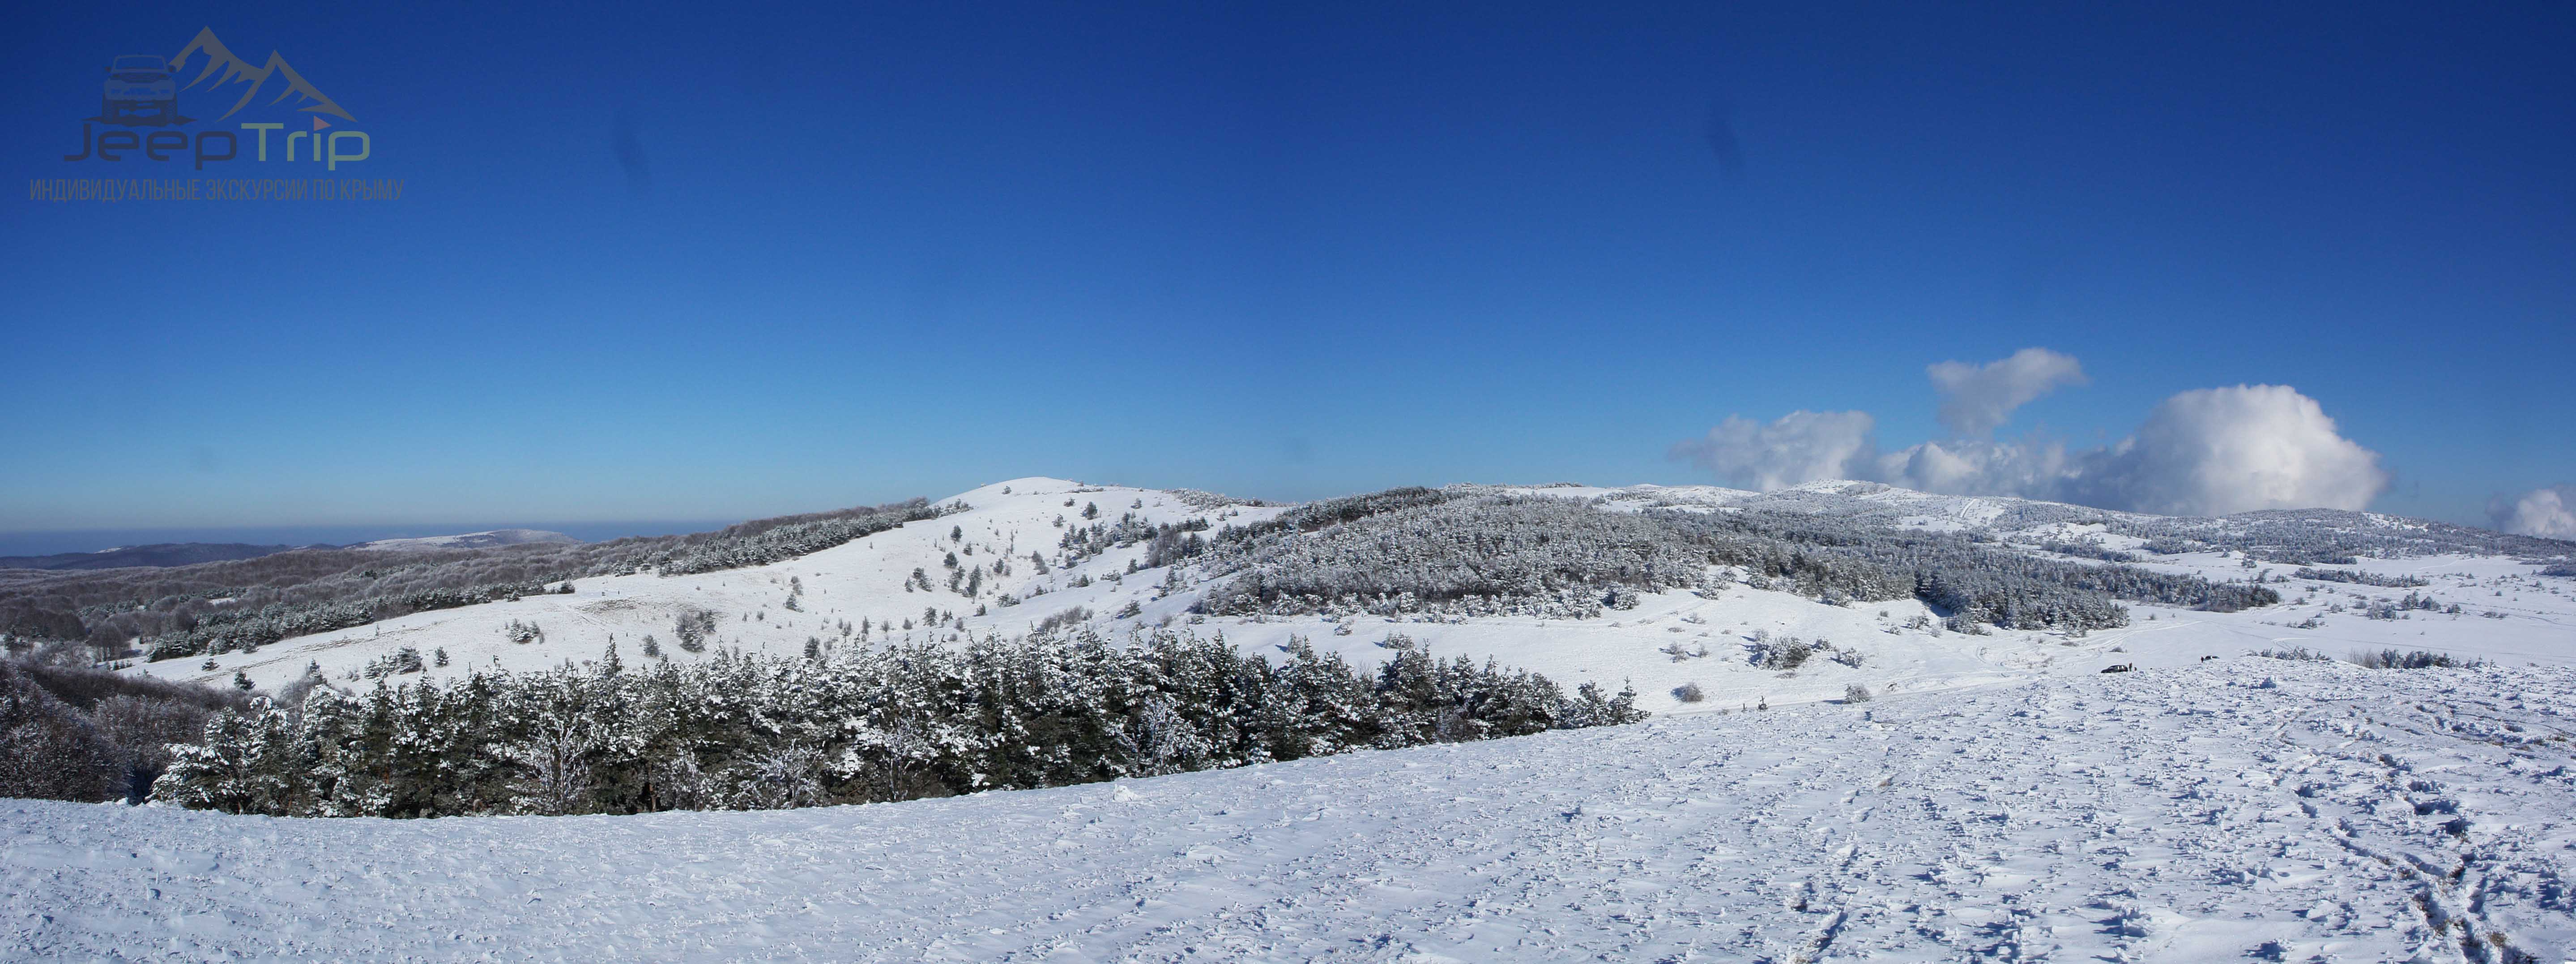 гора Ай-Петри зимой, Панорама плато